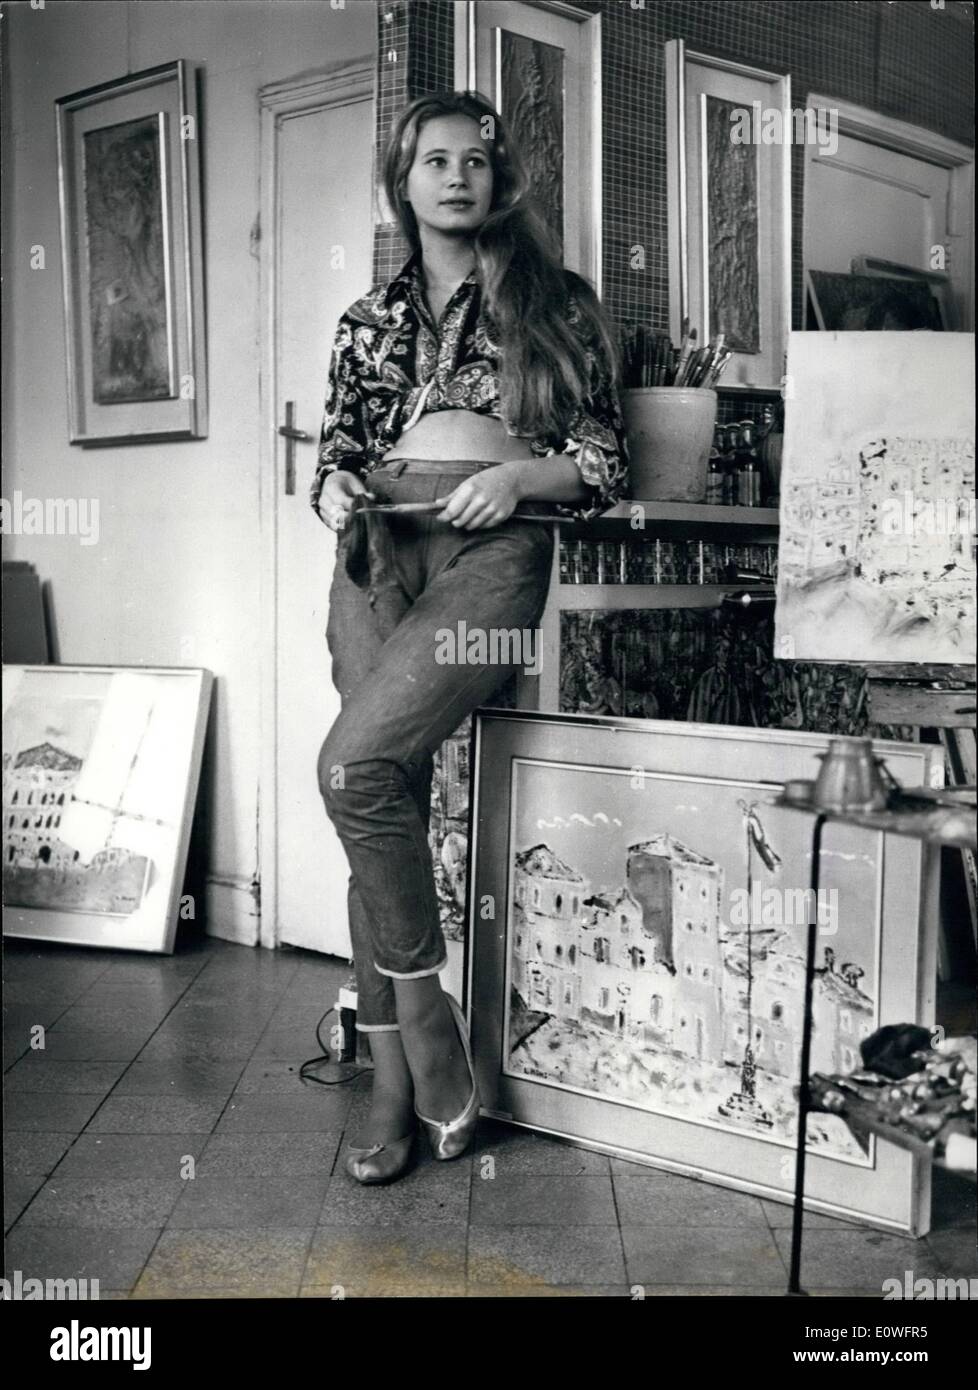 11 novembre 1962 - Liselotte Hohs le peintre d'origine hongroise présente son ''personnel'' il y a deux jours dans une galerie d'art romain, elle a étudié à Vienne, Bruzelles et Venise où elle vit réellement. Elle avait même les demandes des producteurs à faire des films, refuse toujours, comme elle aime l'art et la peinture. Elle veut être quelqu'un dans le monde de l'art et ses peintures vraiment , montrer qu'il peut réussir Banque D'Images